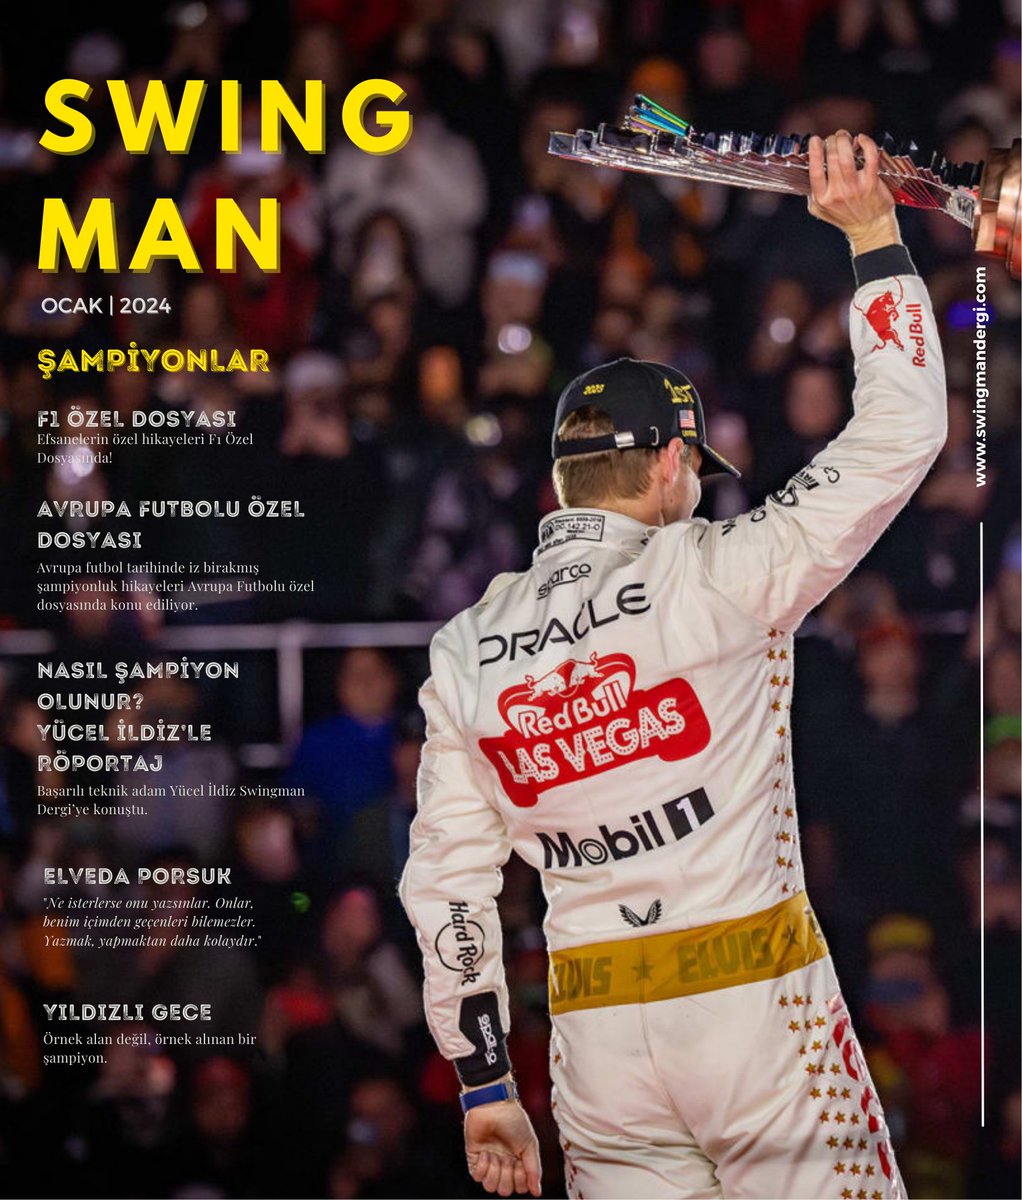 ⏰⏰⏰ Swingman Dergi'nin 'Şampiyonlar' temalı Ocak 2024 sayısı bu akşam saat 20.00'de yayında!!!